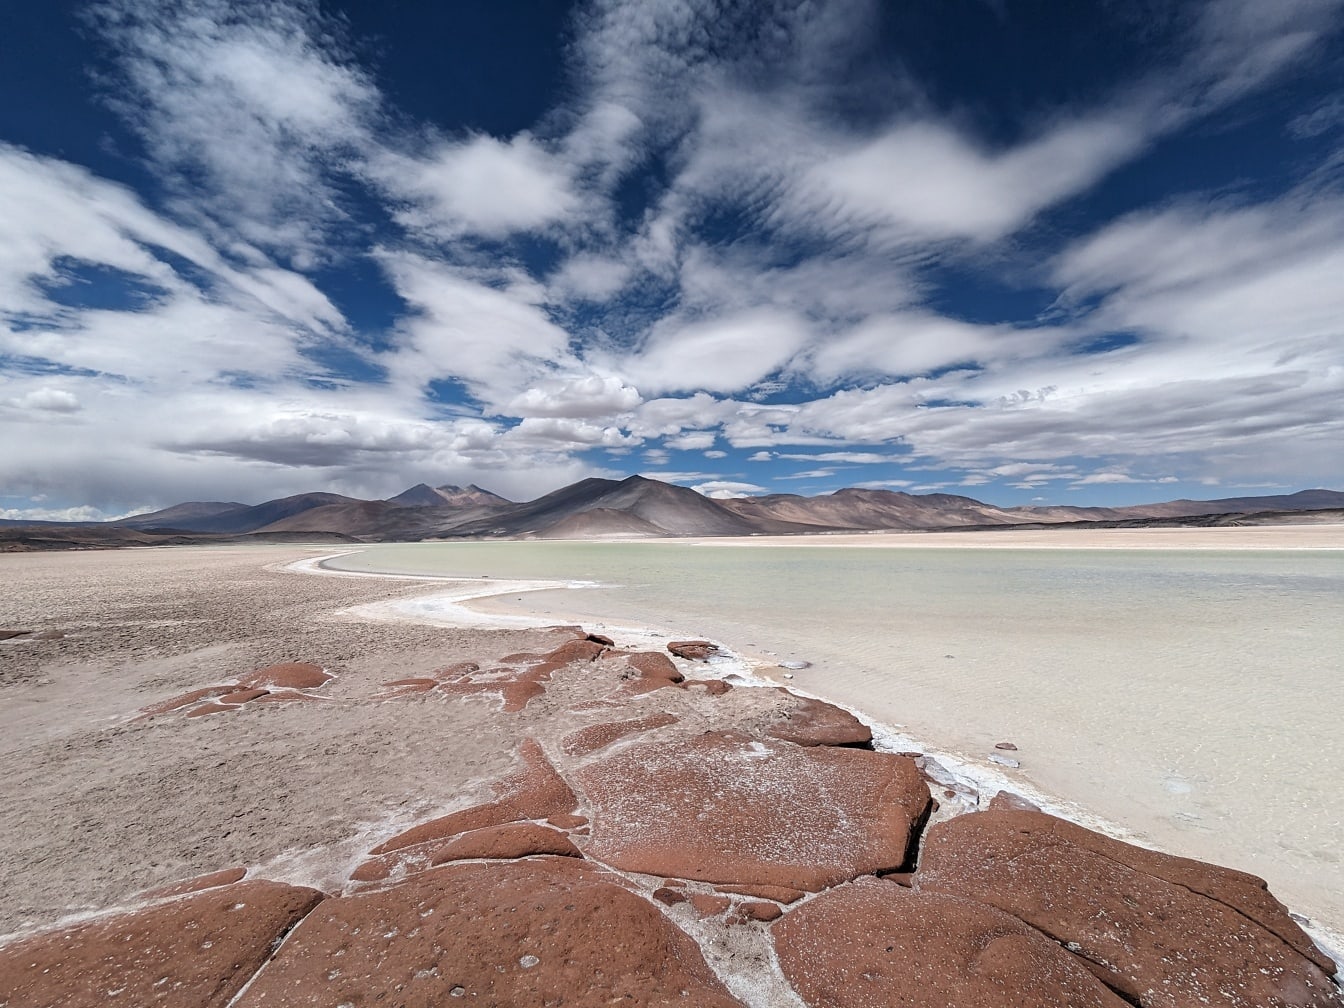 Величественный соленый пляж в соляной лагуне на высокогорном плато в пустыне в Чили